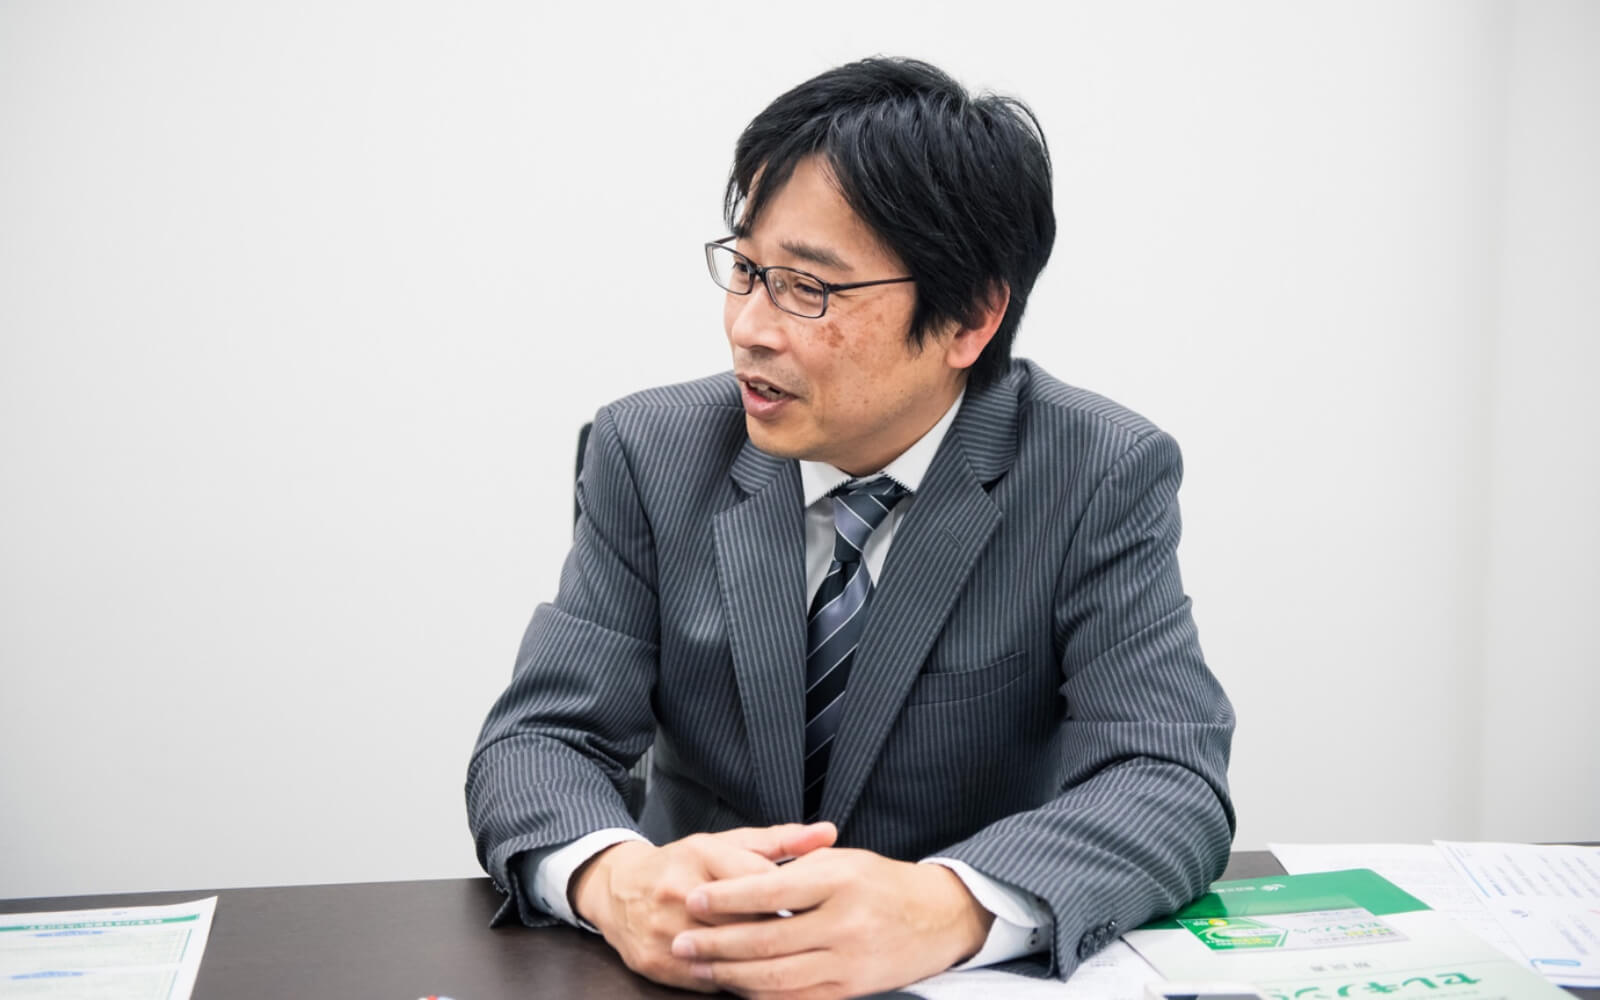 話を聞くのは、田辺三菱製薬ヘルスケア事業部の松村俊樹さんです